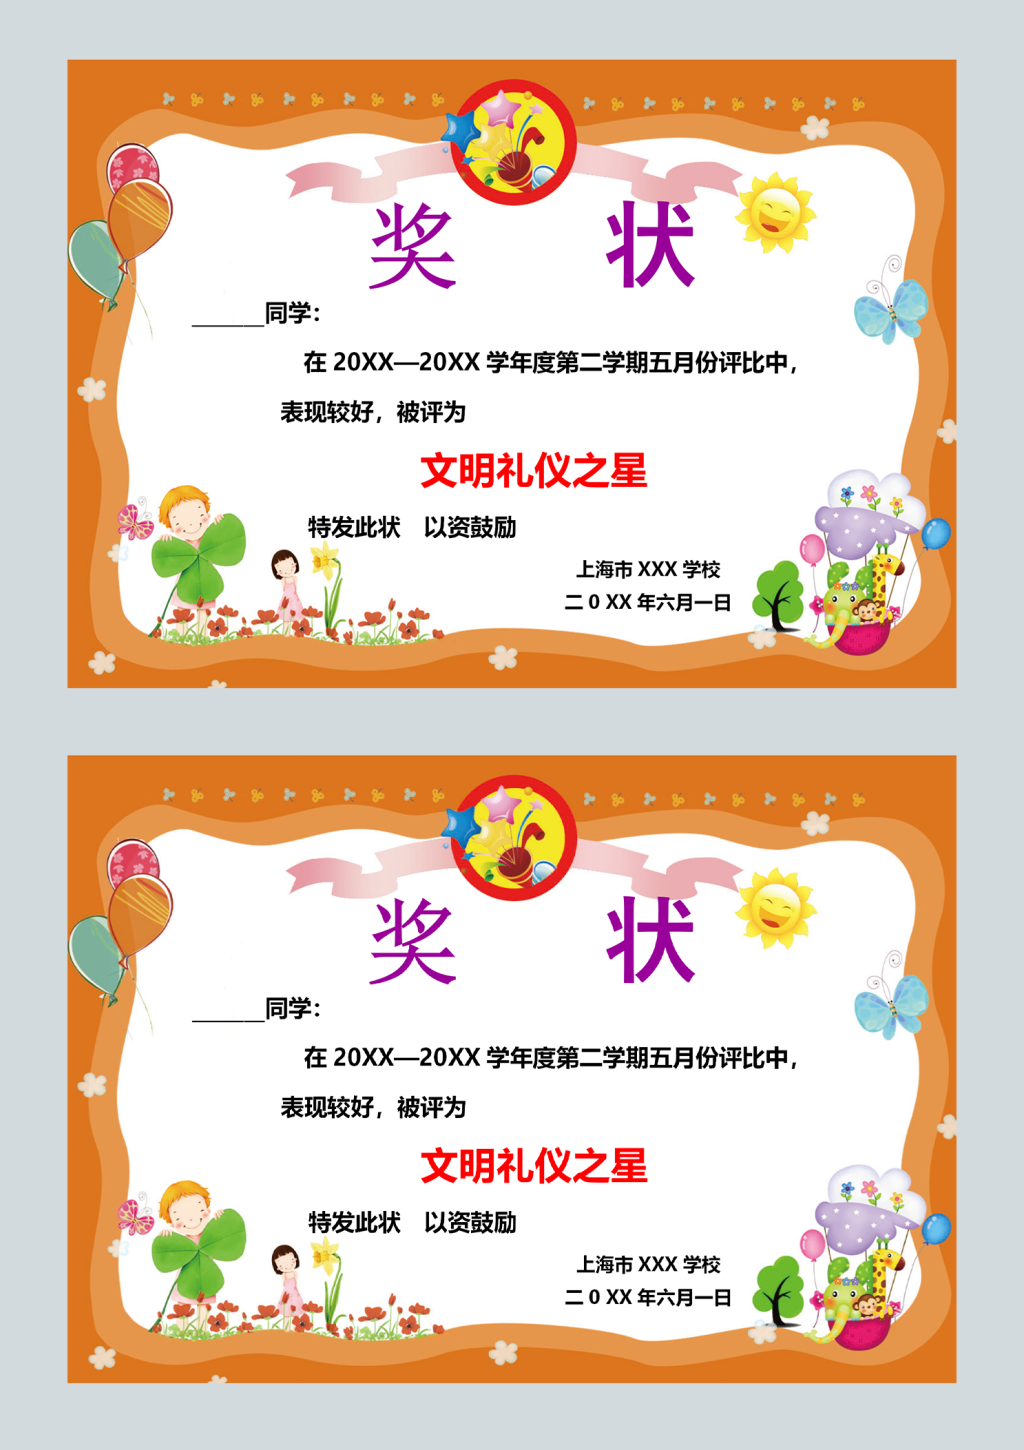 黄红色中式学校庆祝中文奖状 - 模板 - Canva可画